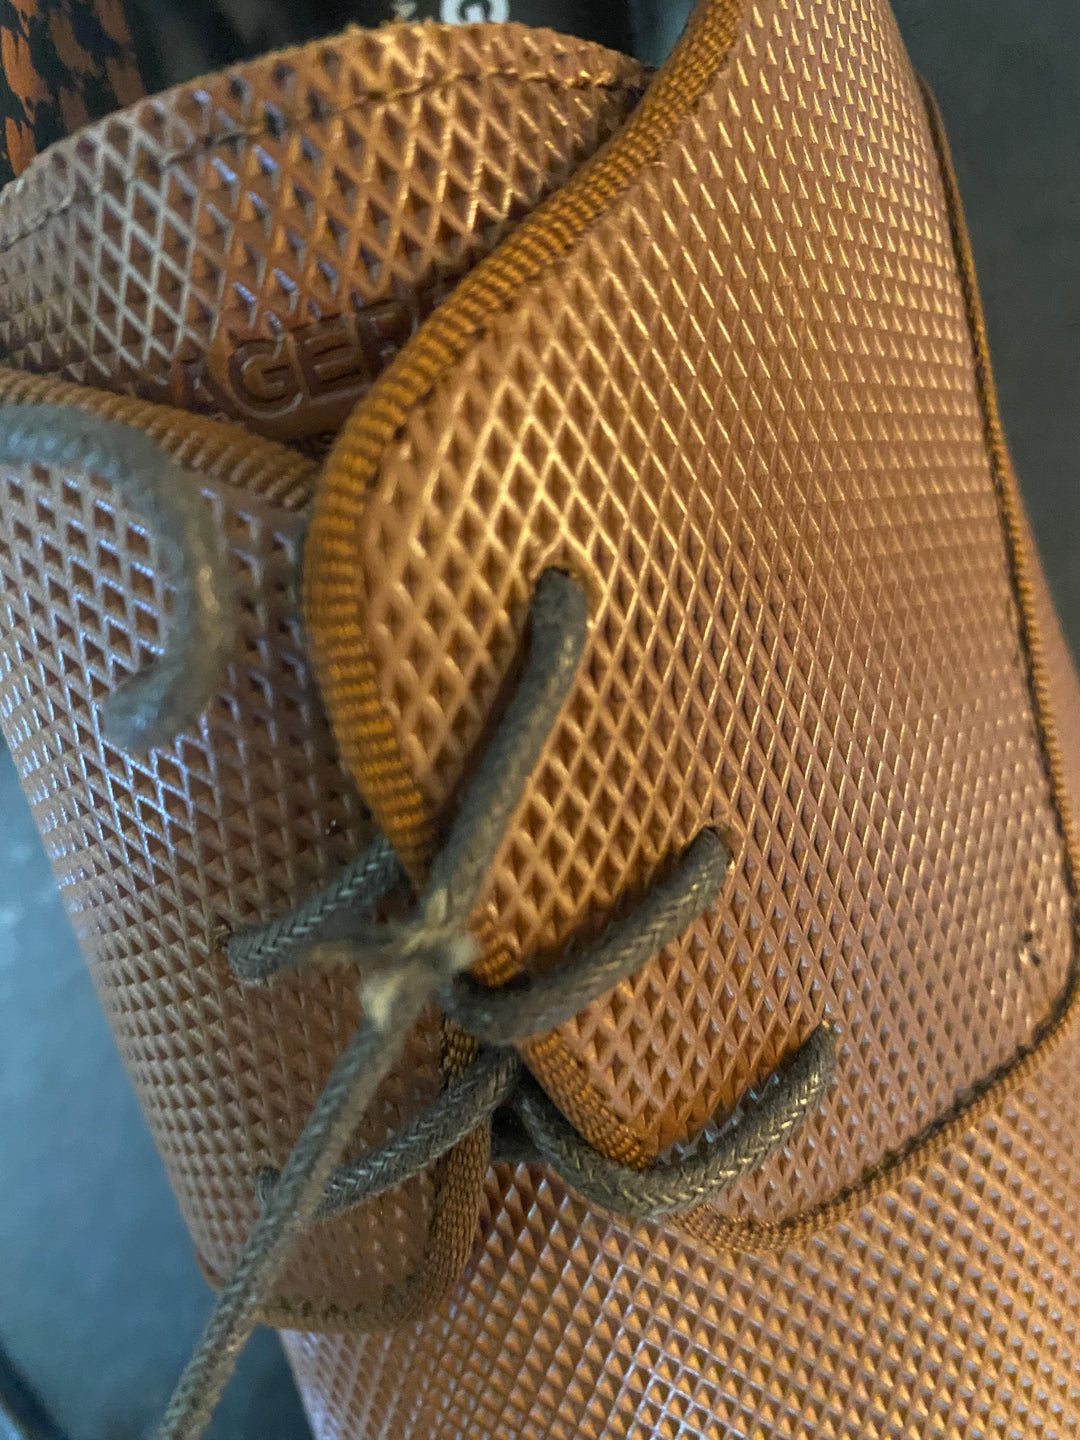 Karl Lagerfeld Leather Derby Dress Shoe Size 10.5